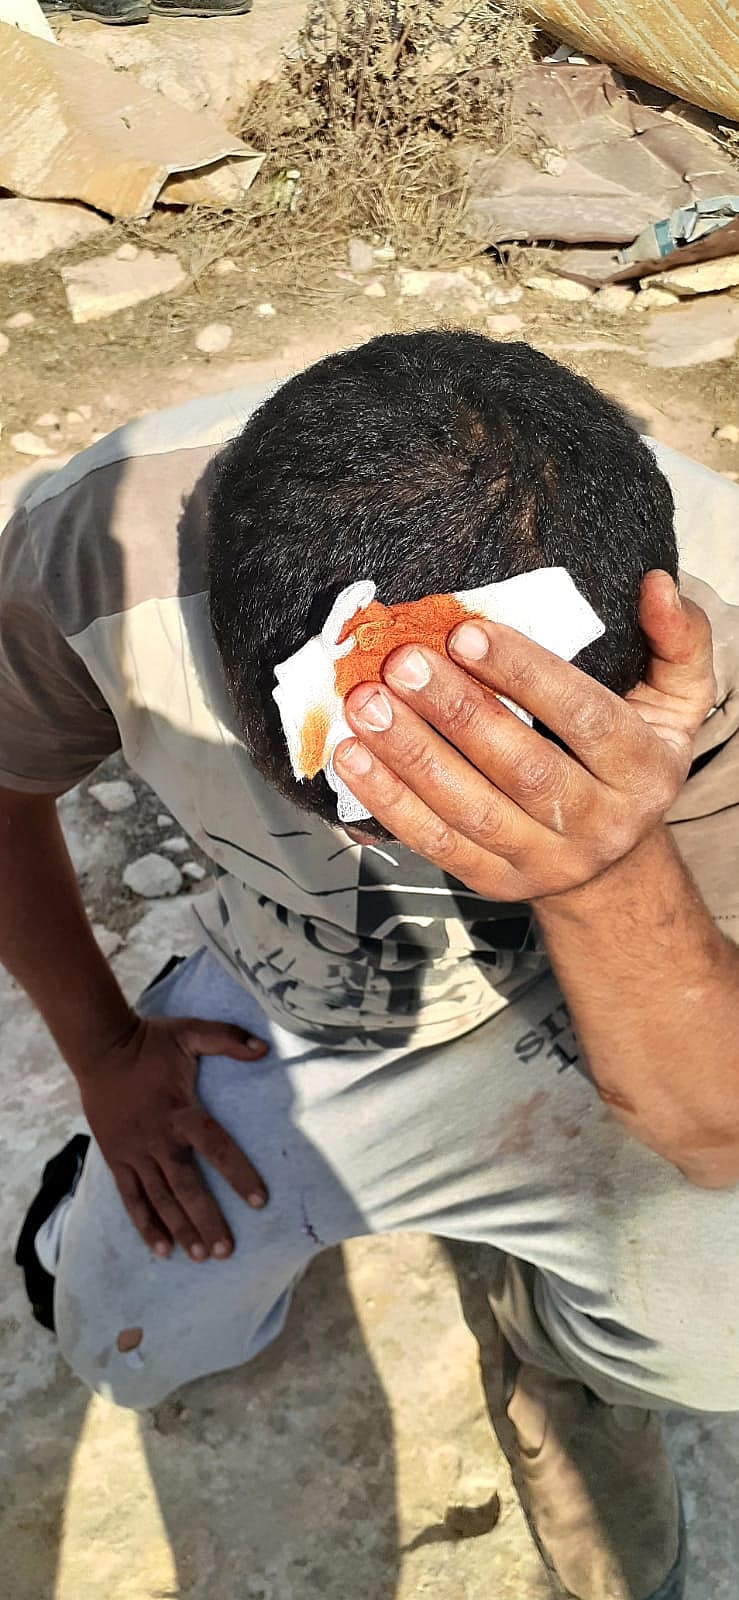 פלסטיני שנפצע באירועי האלימות בדרום הר חברון